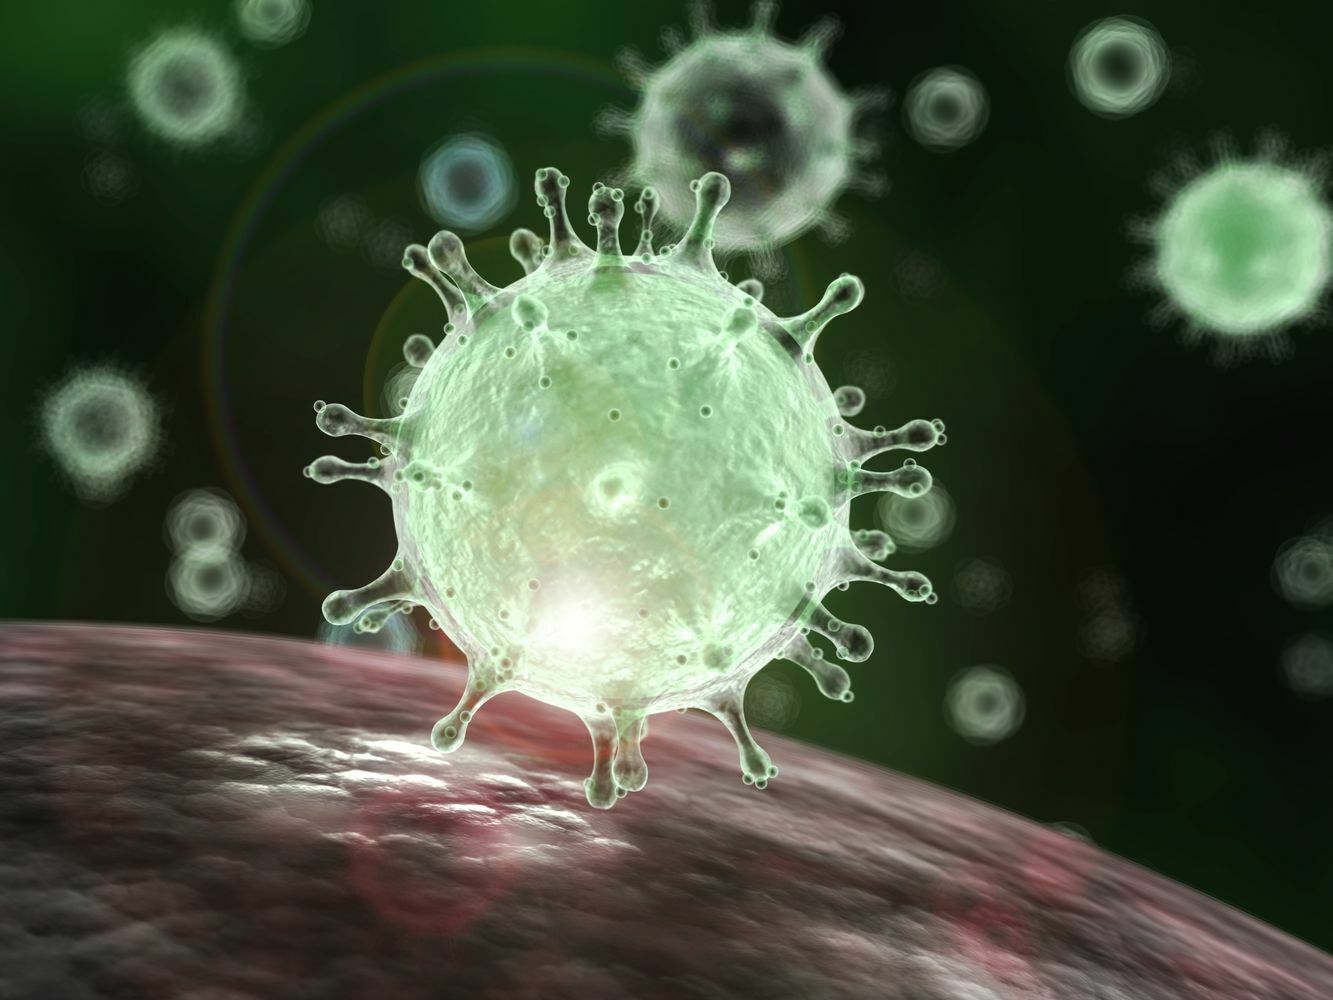 Смертельно опасный симбиоз: как коронавирус перерождается в киборга